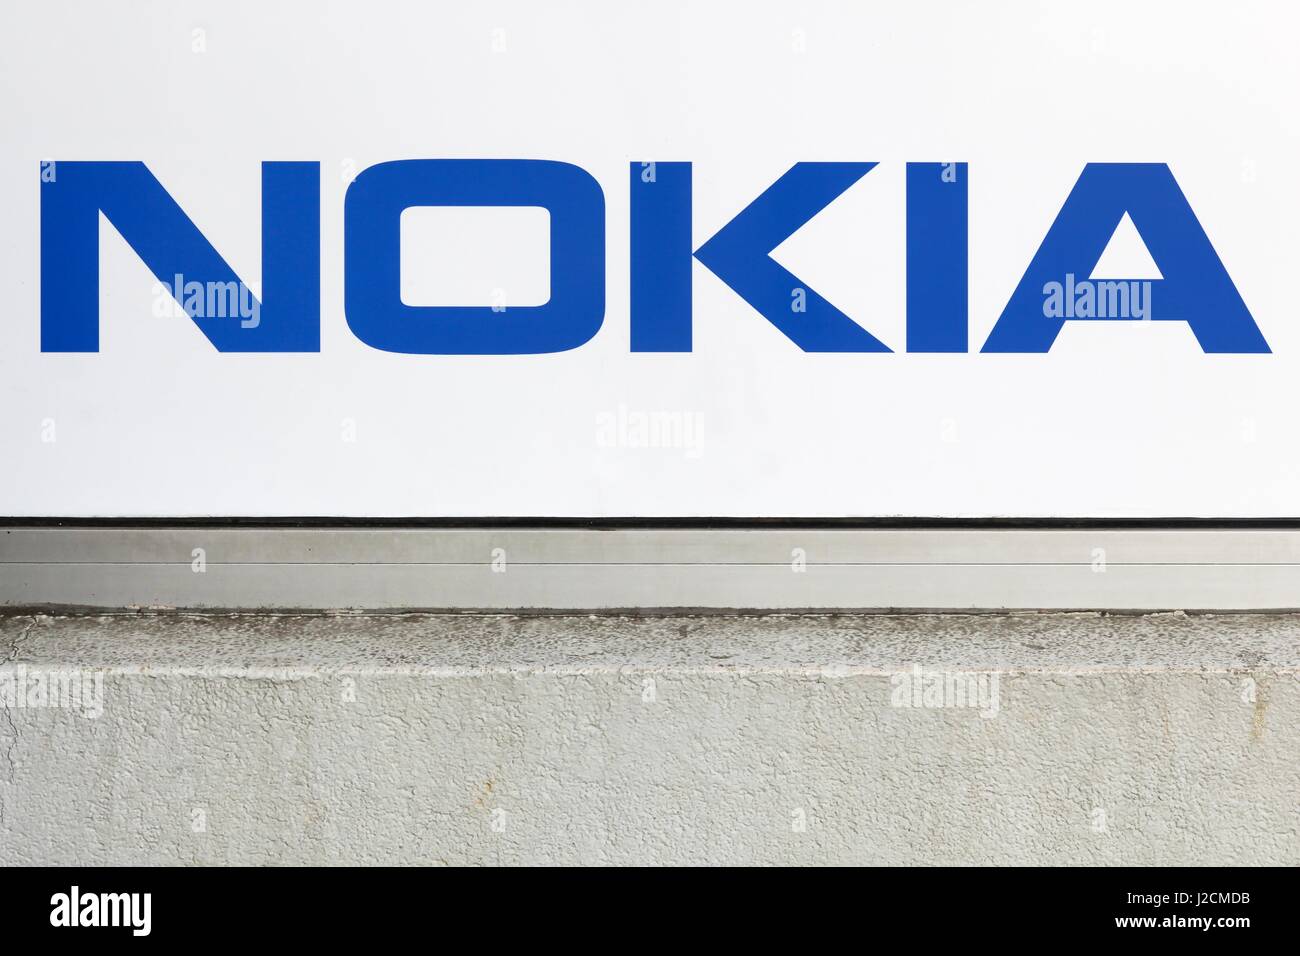 Villefranche, France - 13 mars 2017 : Nokia logo sur un mur. Nokia est une multinationale finlandaise de la technologie de l'information et des communications Banque D'Images